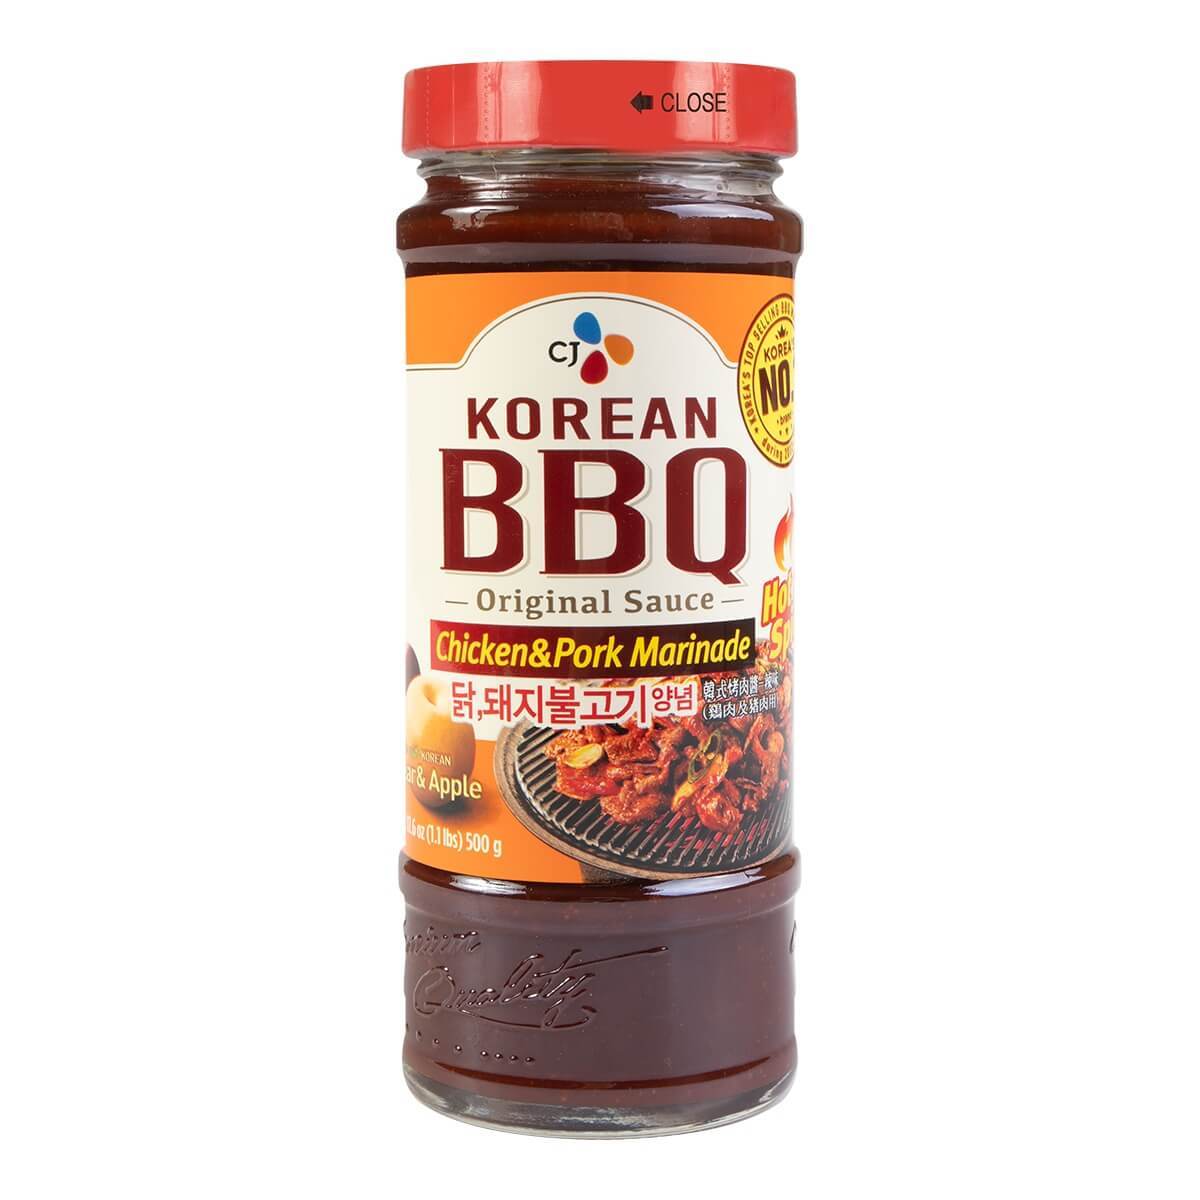 CJ Korean BBQ Chicken & Pork Marinade Hot & Spicy